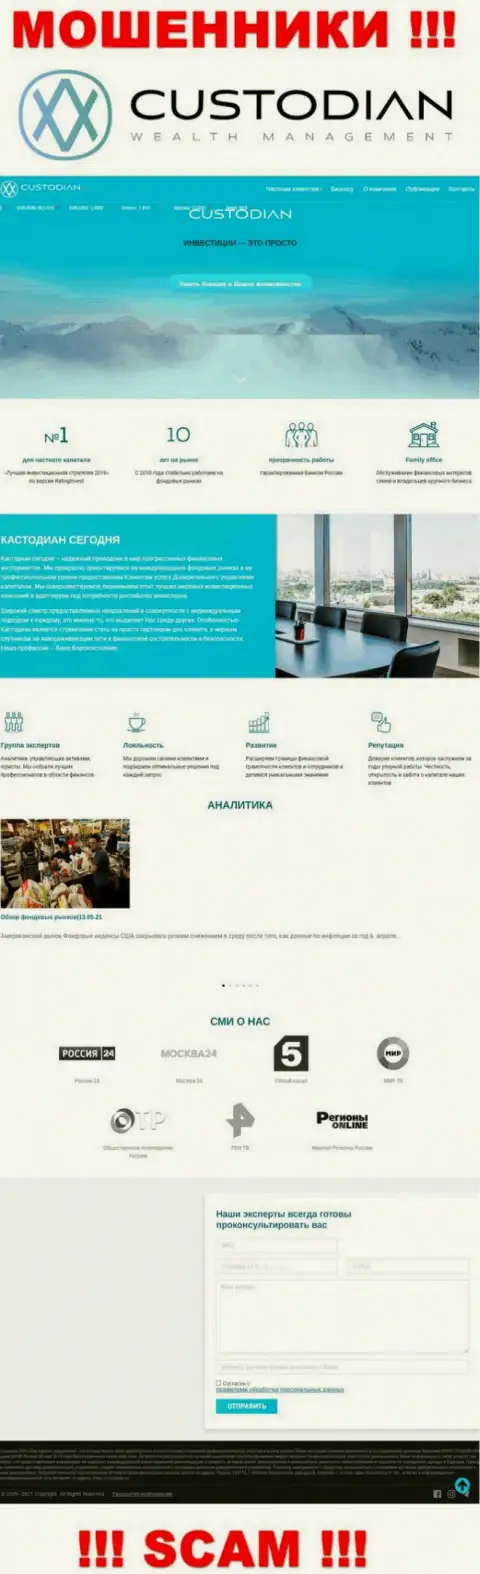 Скриншот официального онлайн-ресурса жульнической организации Кустодиан